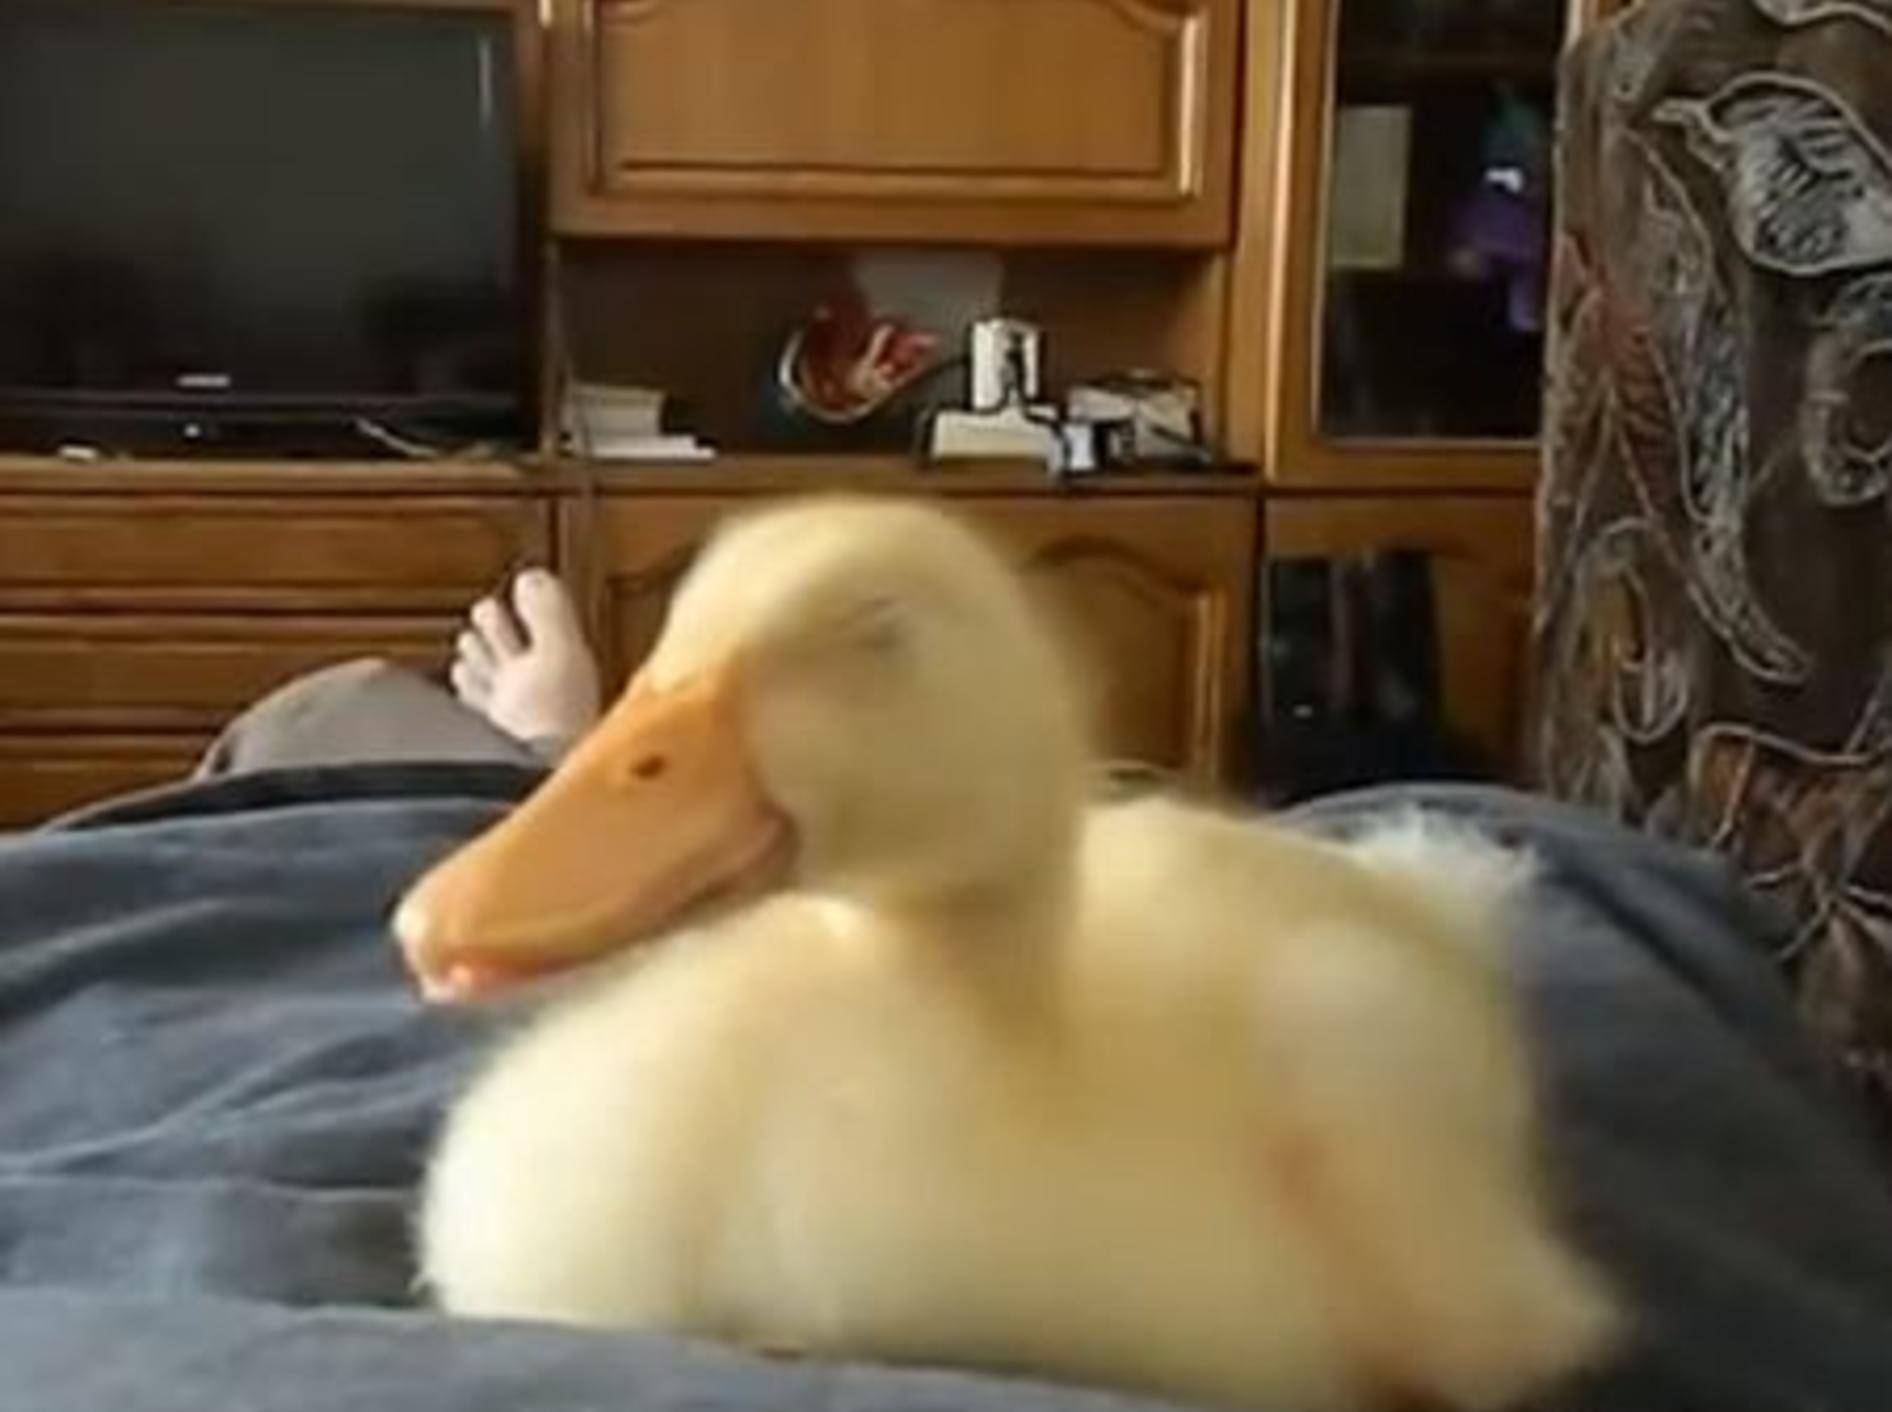 Schnarchende Ente auf dem Bett - Bild: Youtube / mihaifrancu